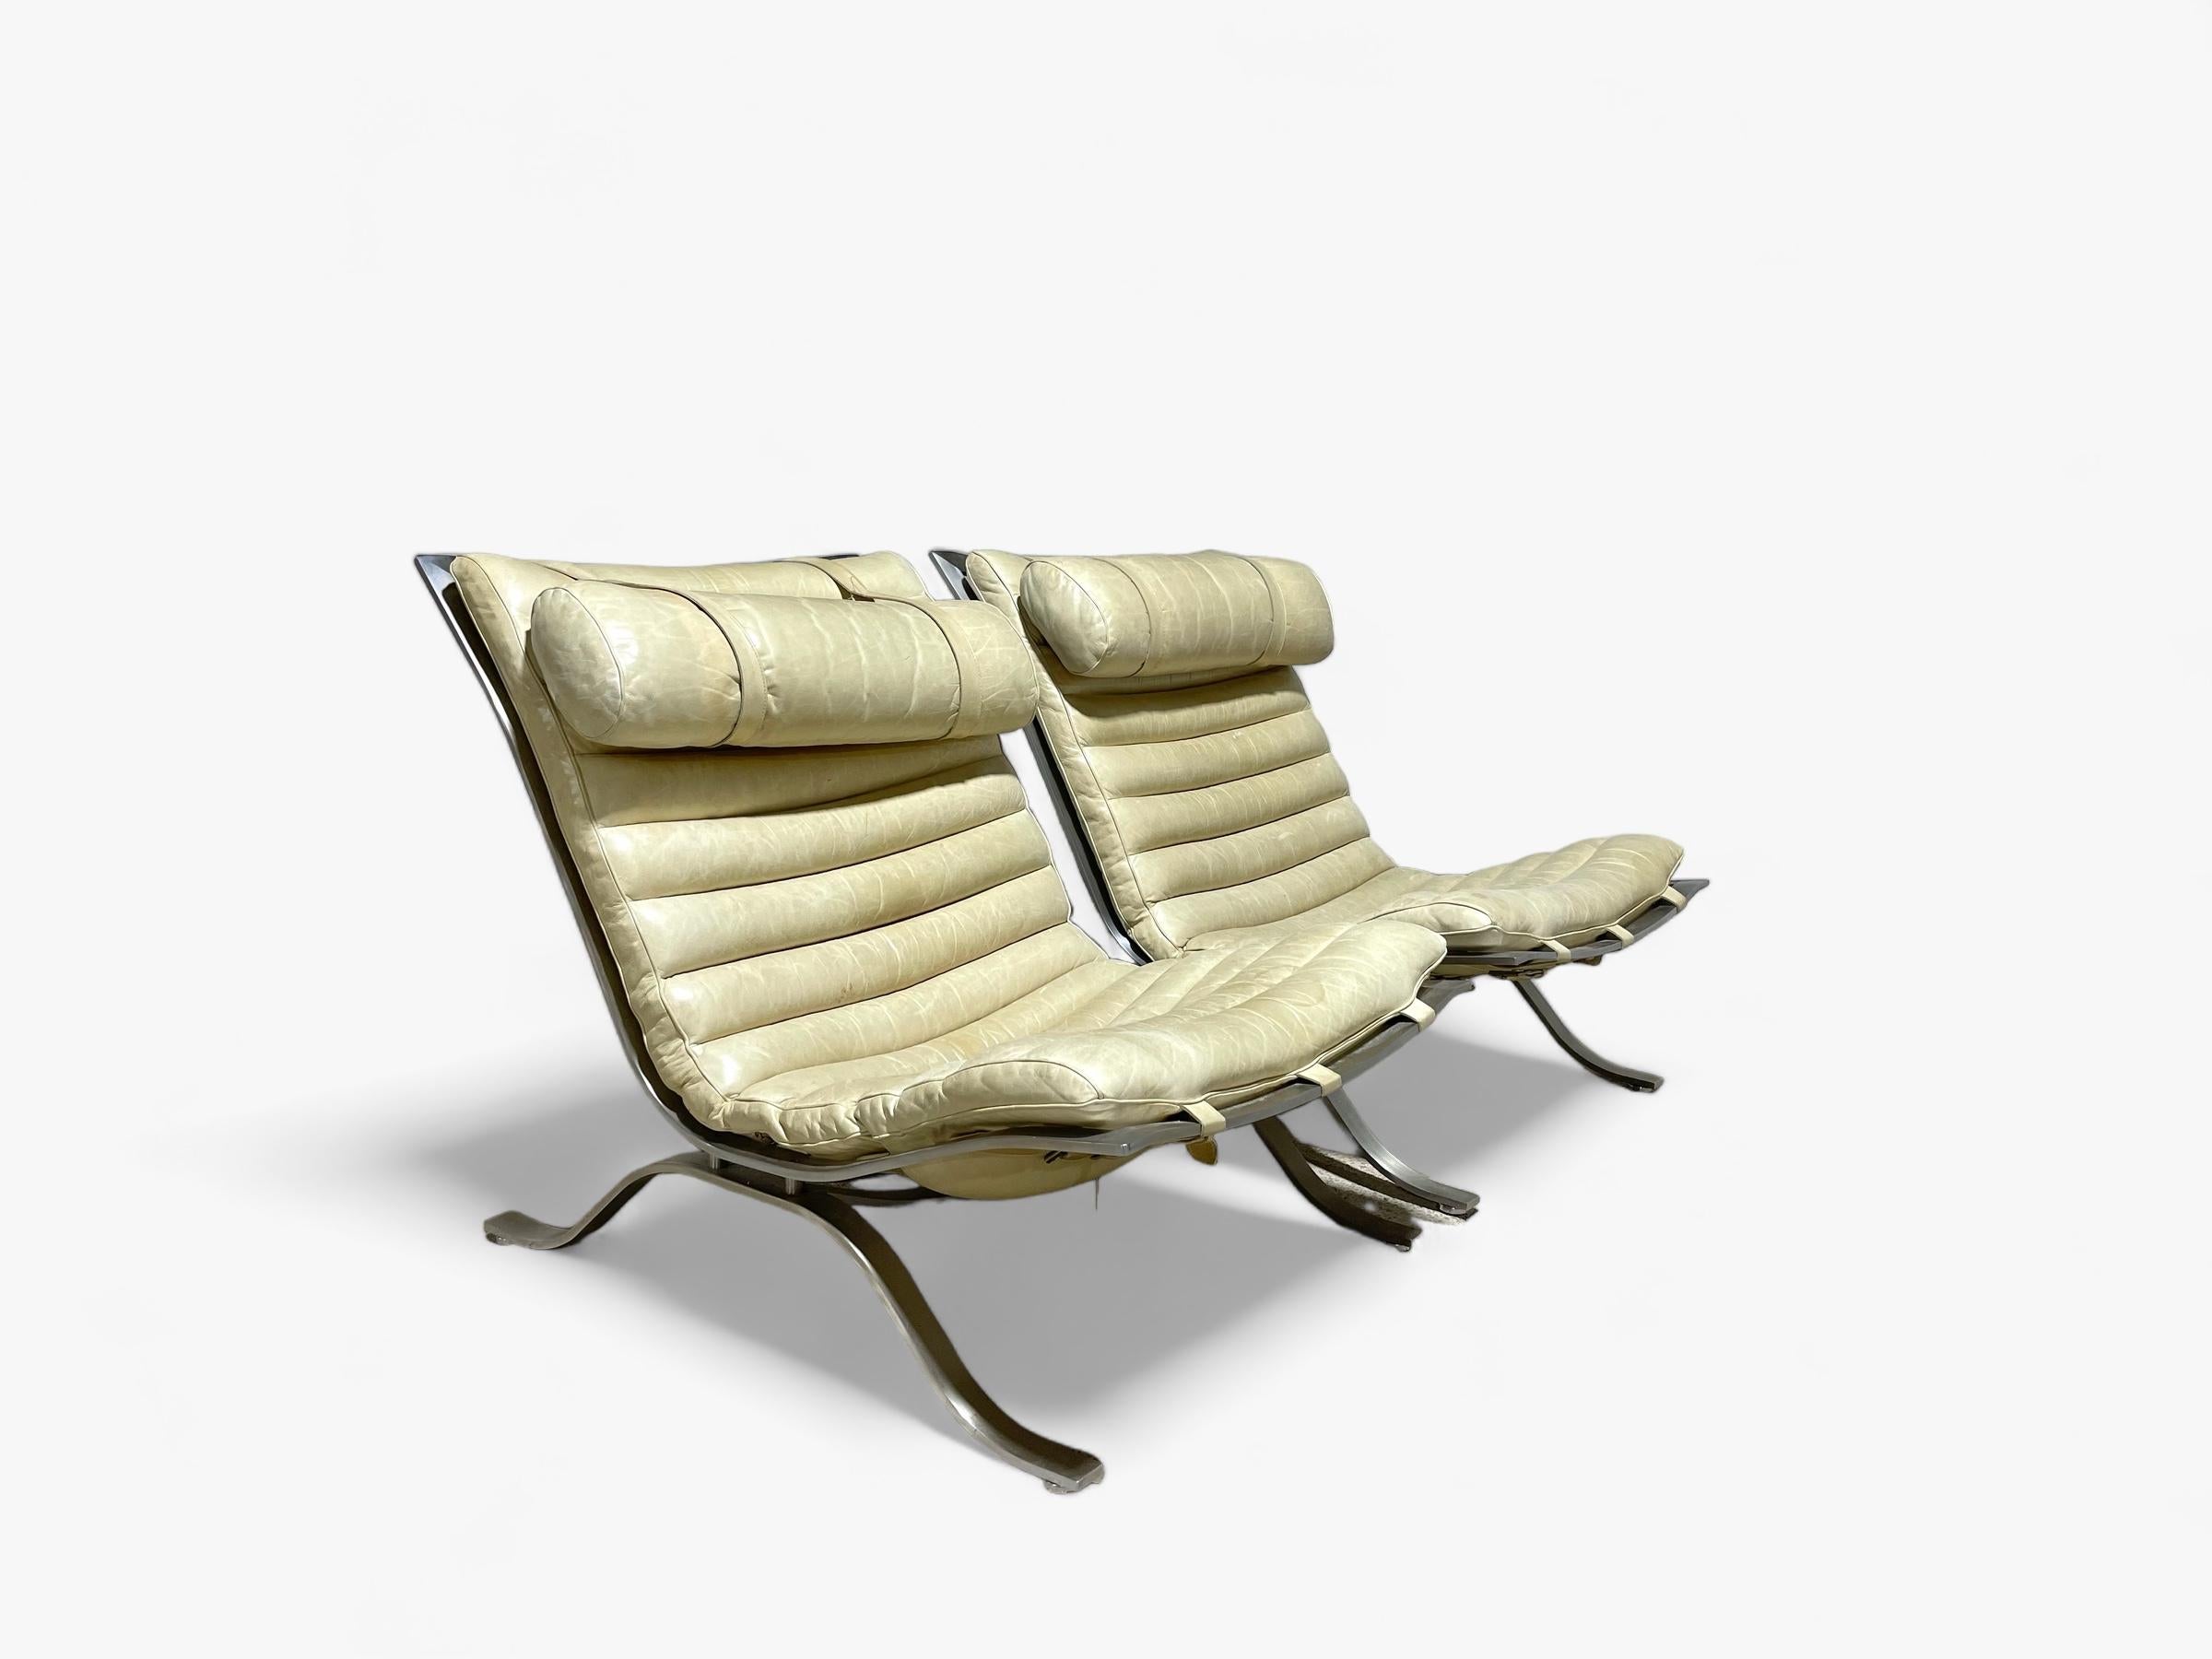 Ein Paar spektakuläre Arne Norell Lounge-Sessel aus patiniertem elfenbeinfarbenem Leder. Wohl einer der begehrtesten und sammelwürdigsten Loungesessel aus der skandinavischen Moderne. 

Die Stühle wurden in den 1960er Jahren von Norell Møbel AB in